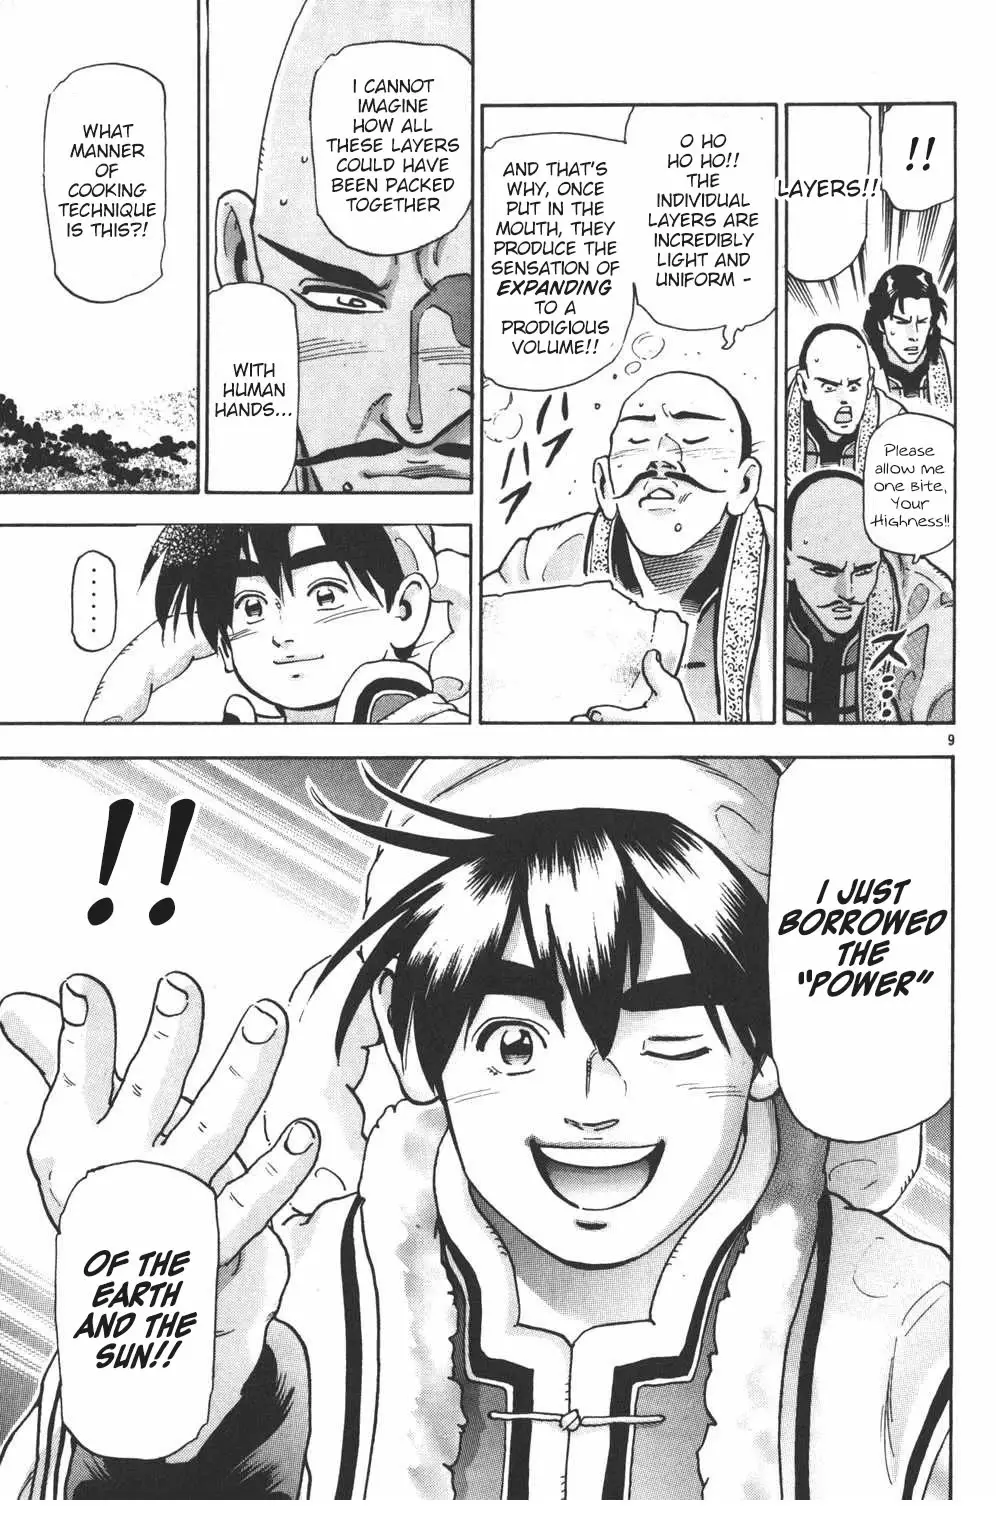 Shin Chuuka Ichiban! - 104 page 9-9f014877